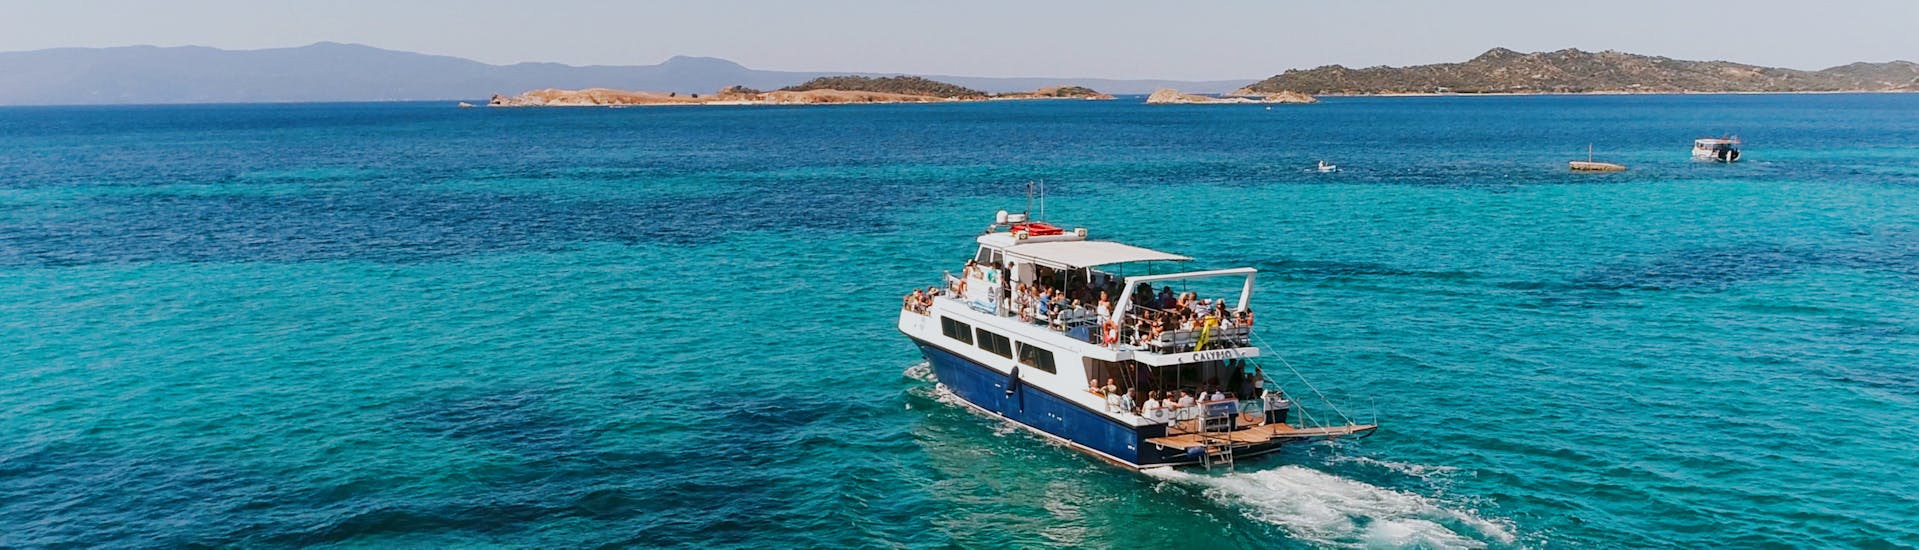 Bateau dans le lagon bleu durant l'excursion en bateau d'Ouranoupolis au Lagon Bleu avec repas grecque.